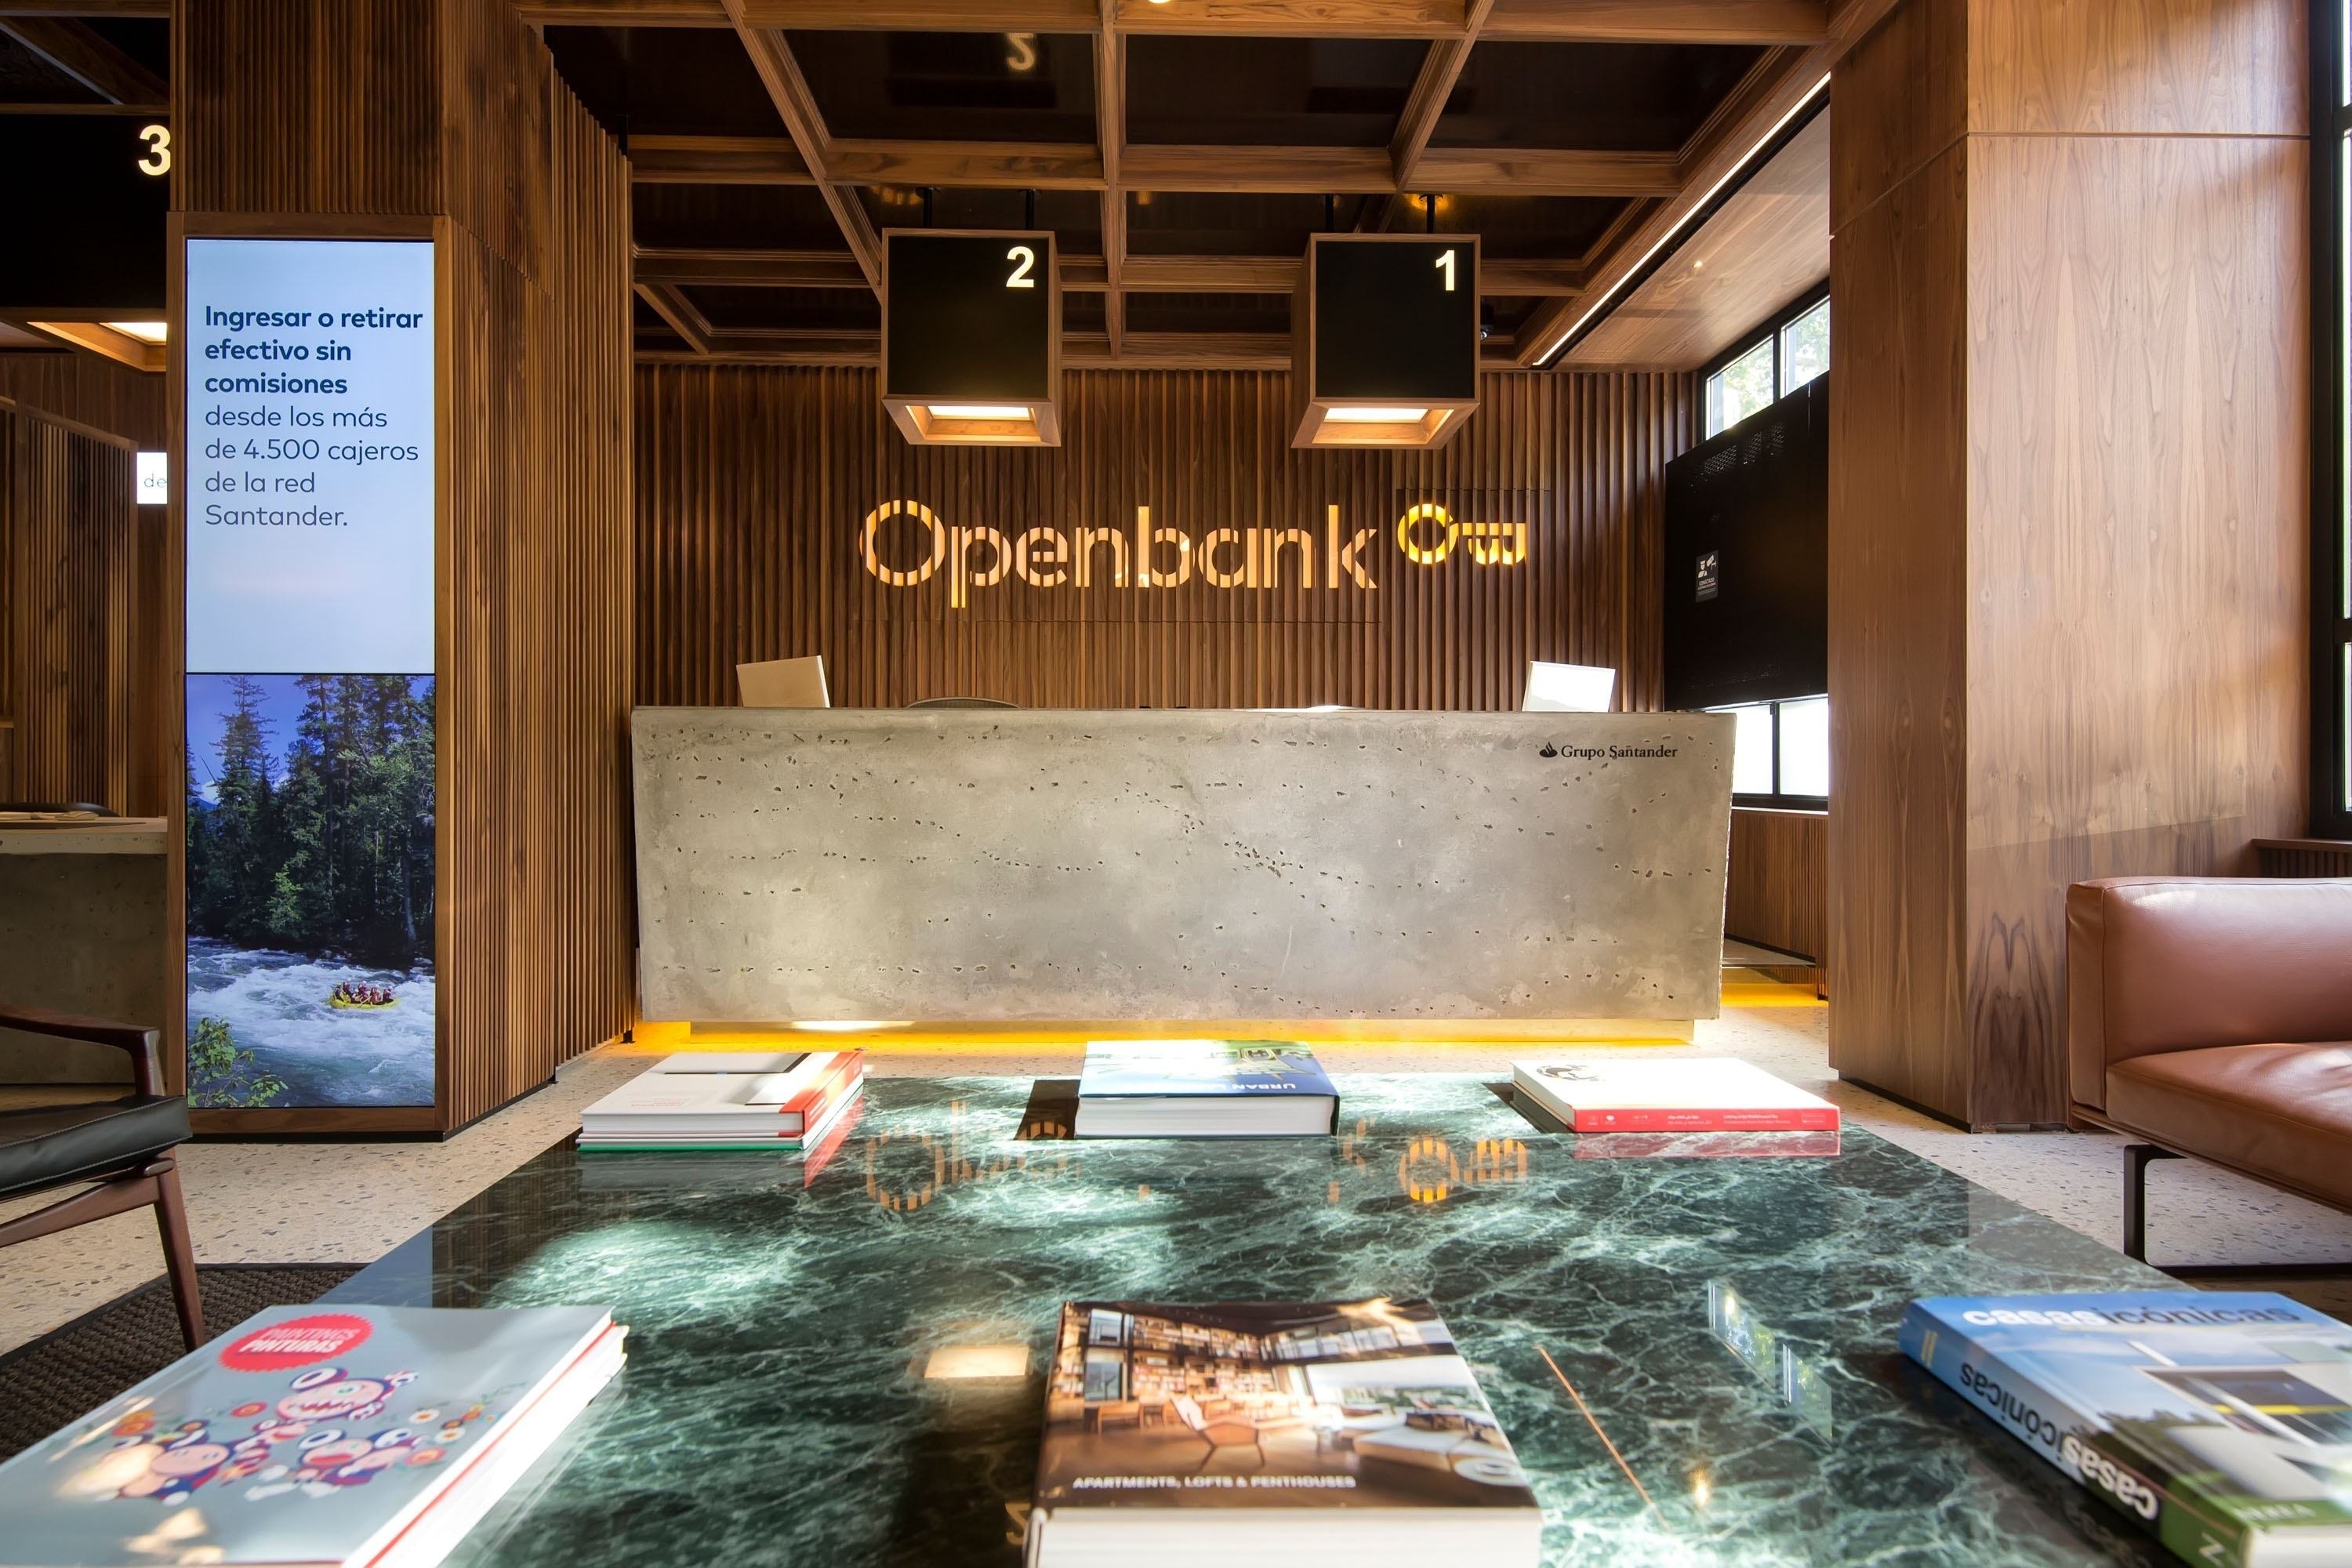 Openbank regala hasta 400.000 euros en premios a quienes contraten su depósito al 3,07%